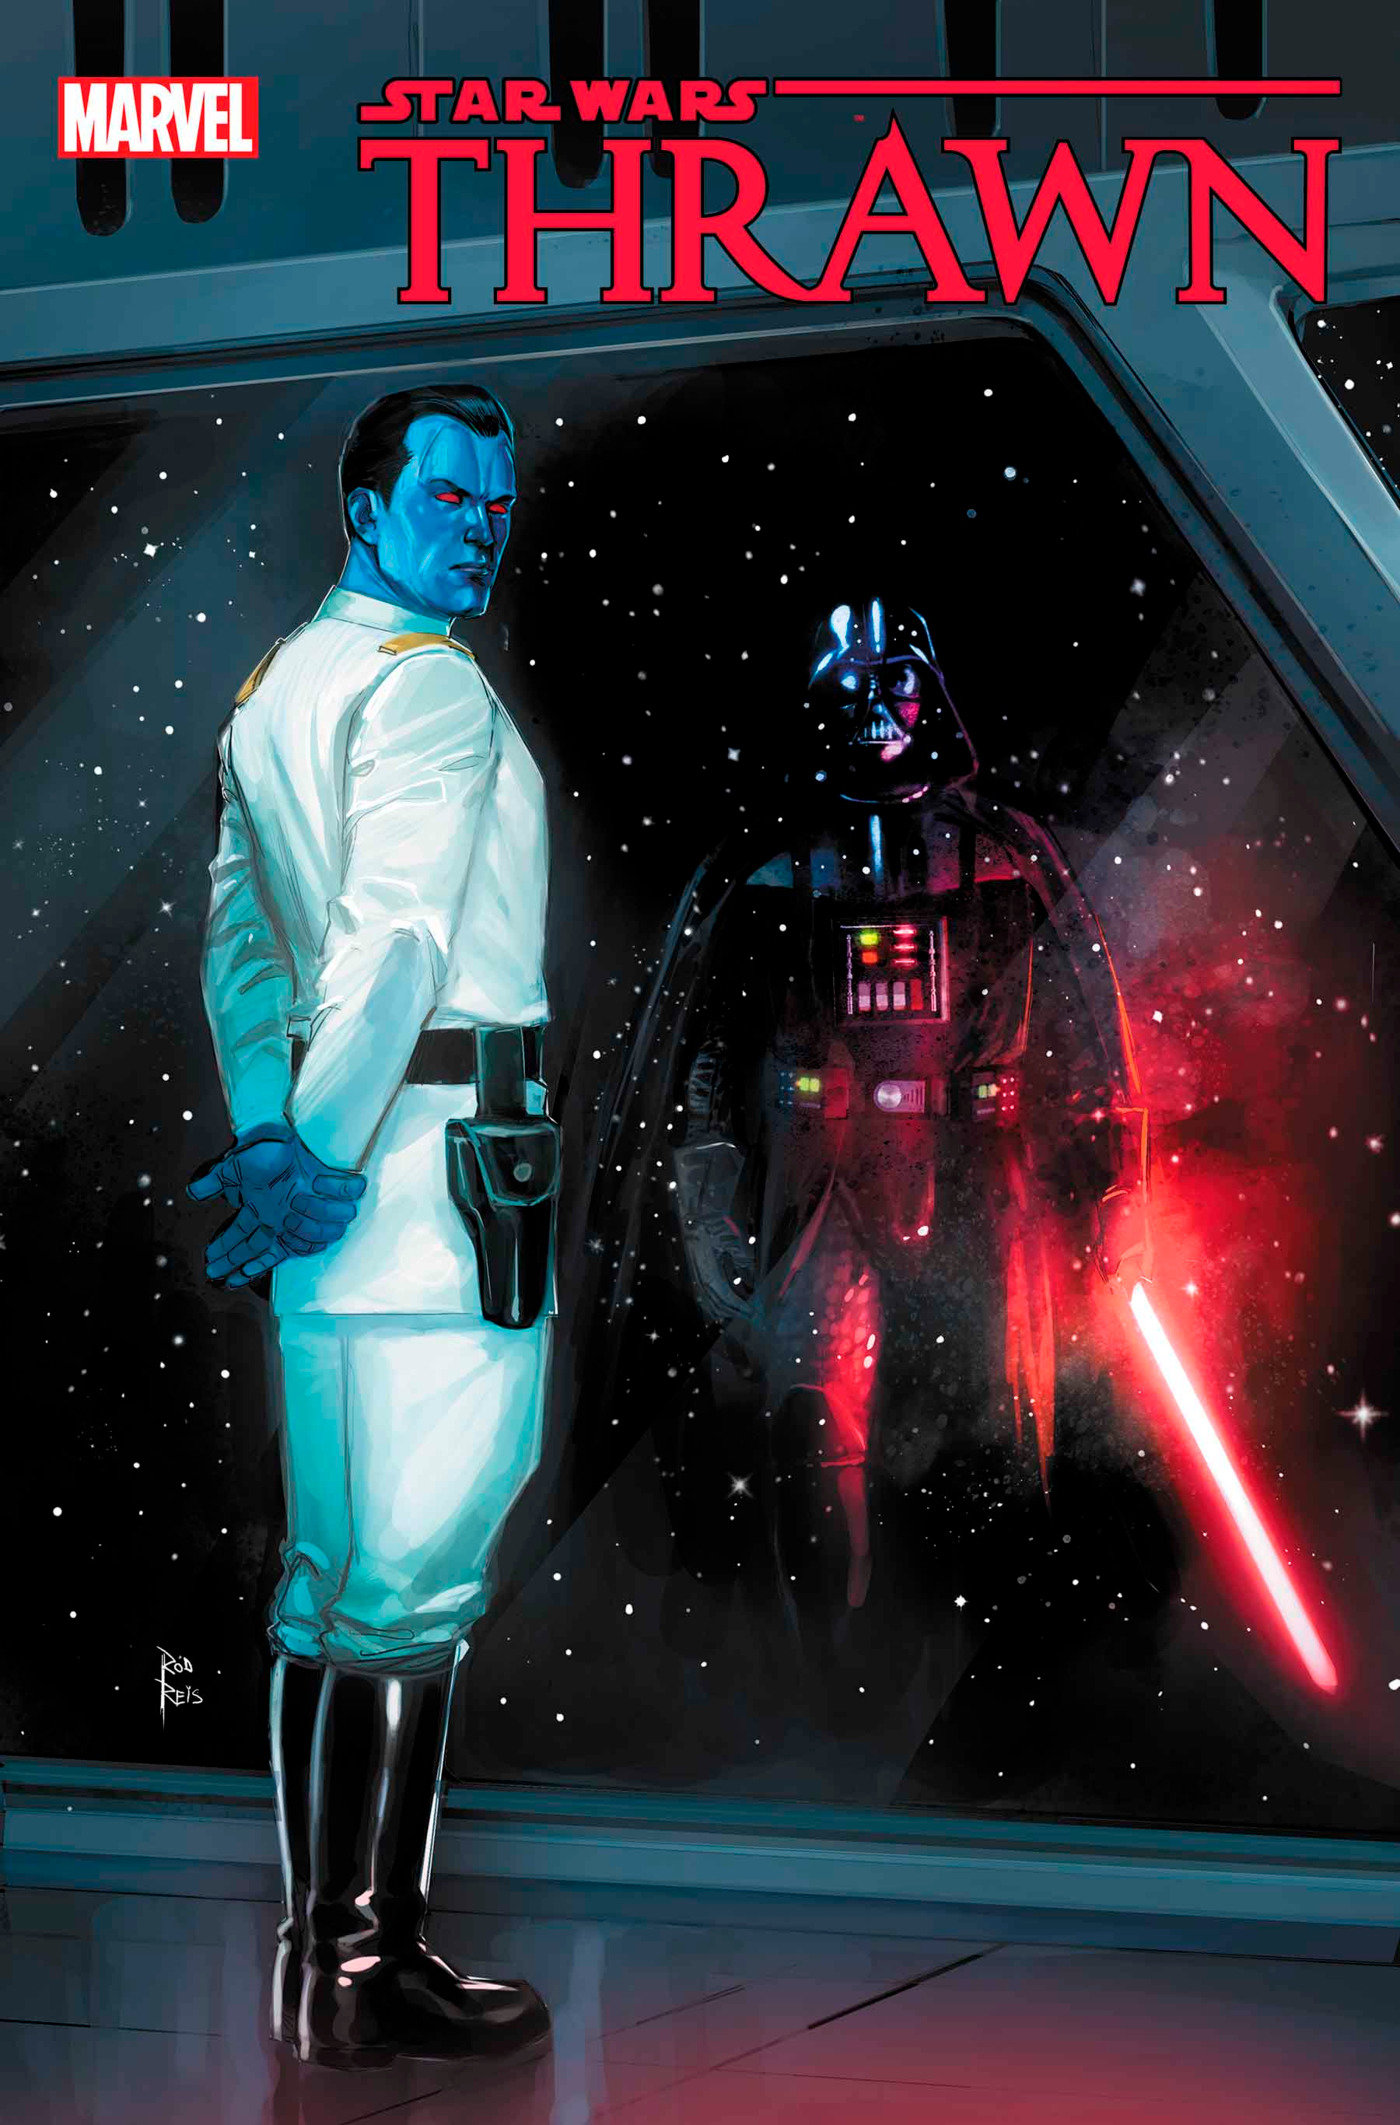 Star Wars: Thrawn Alliances #2